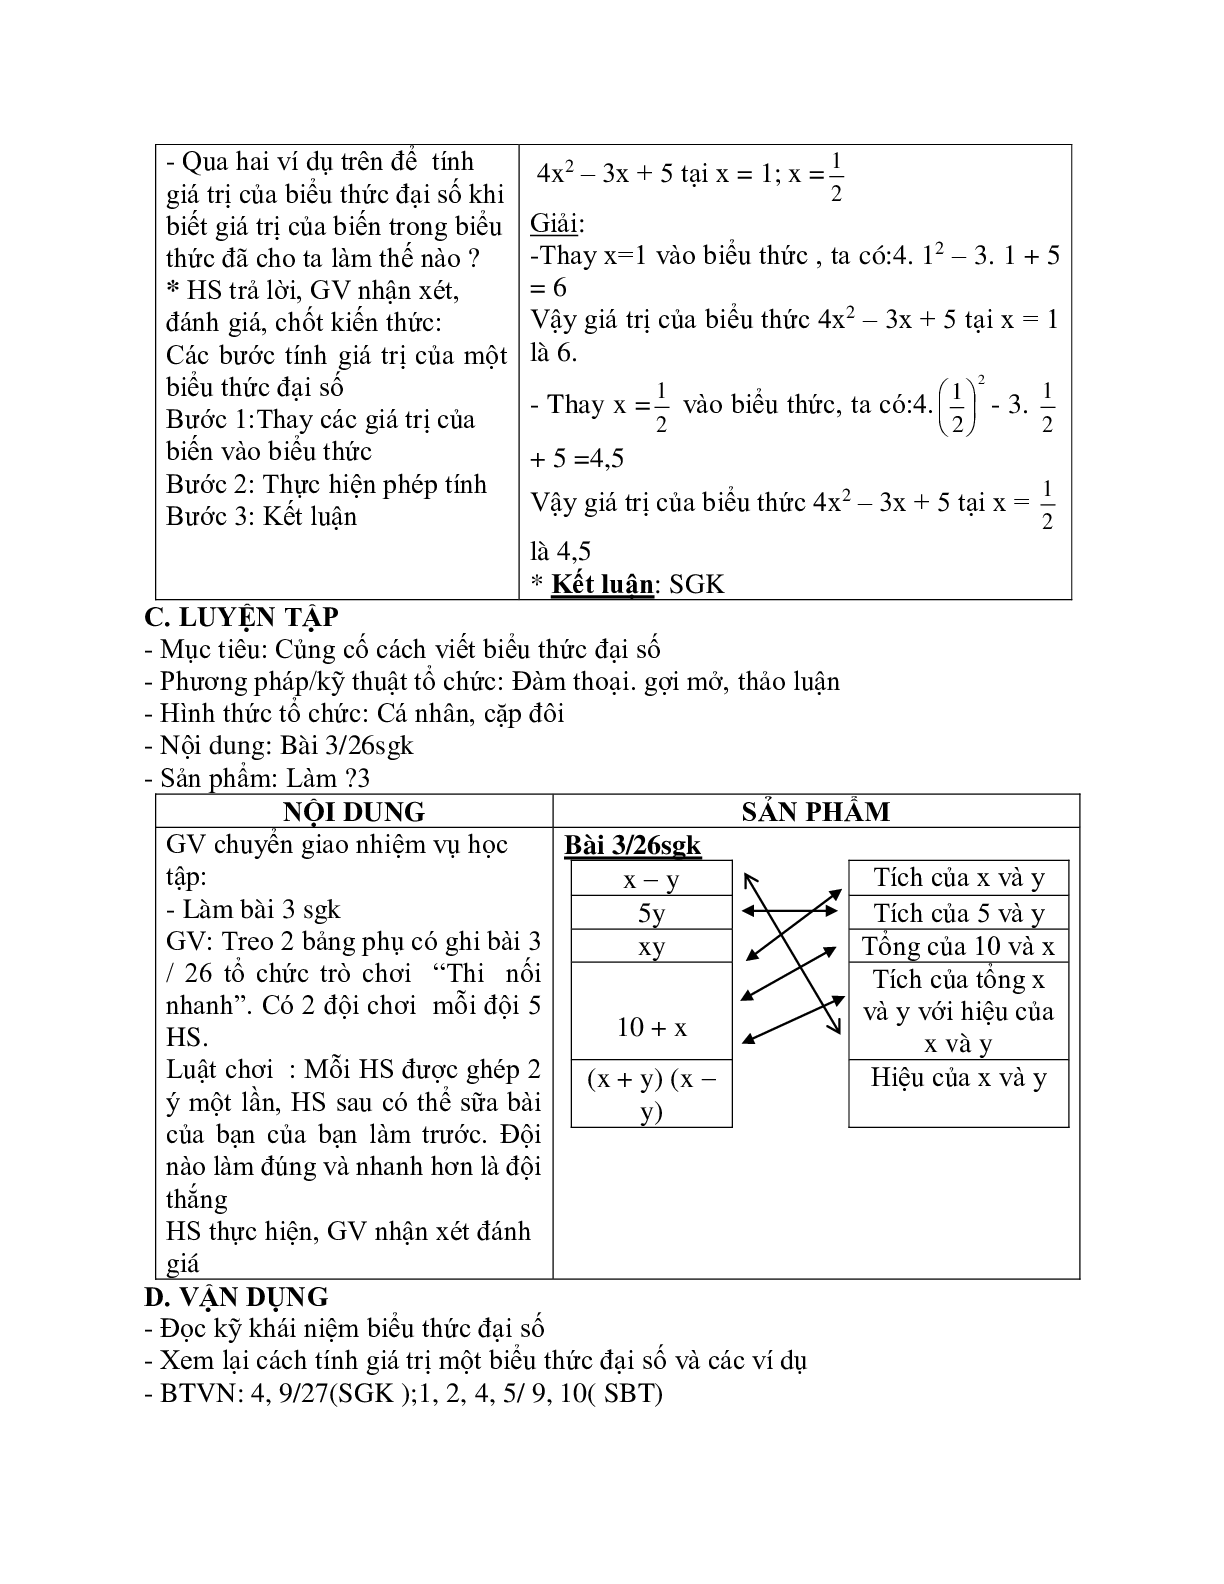 Giáo án Toán học 7 bài 1,2: Khái niệm về biểu thức đại số - Giá trị của một biểu thức đại số chuẩn nhất (trang 3)